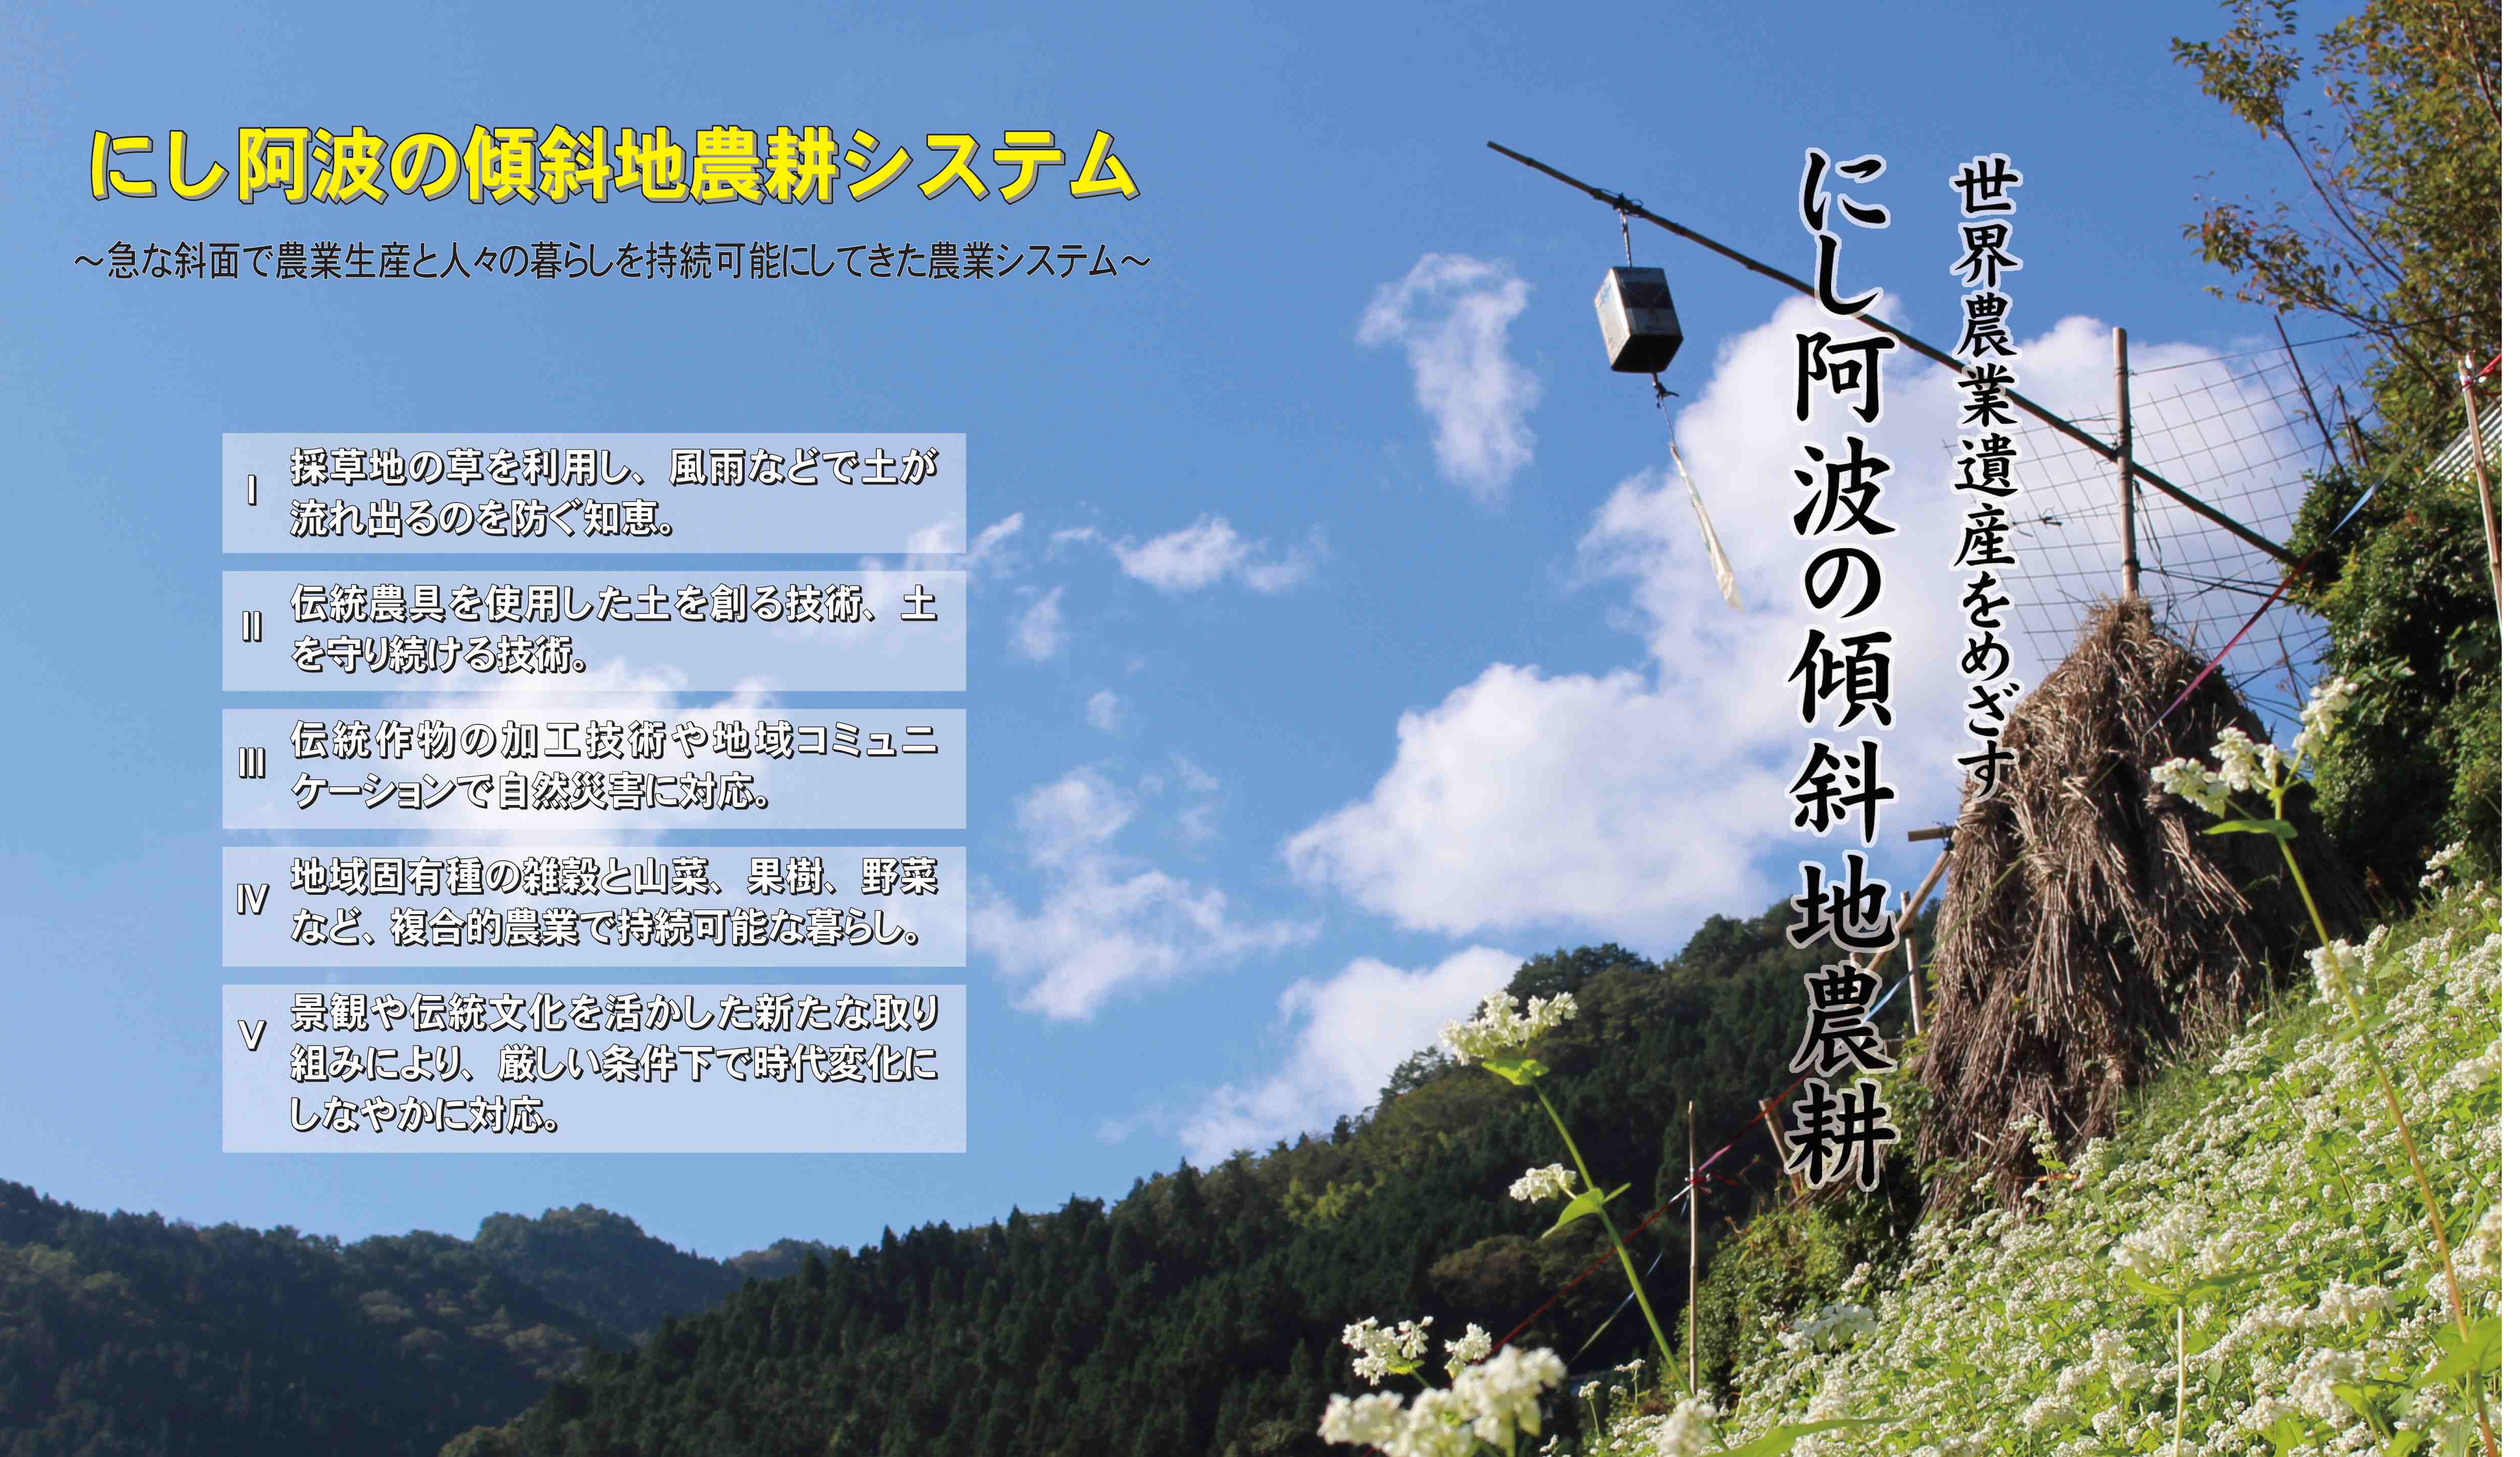 にし阿波の傾斜地農耕システムが『日本農業遺産』に認定地域に決定